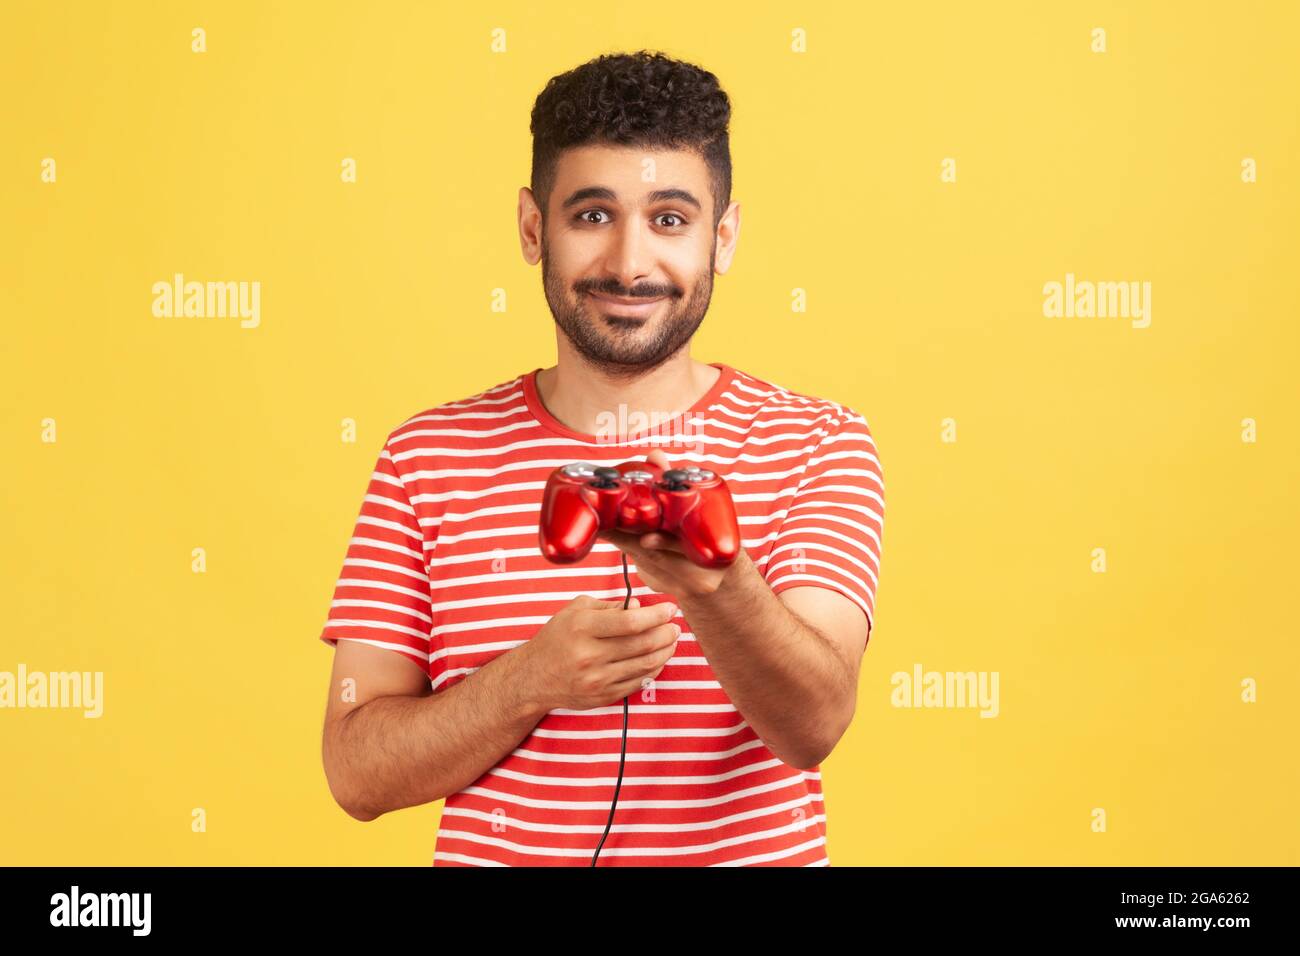 Generoso uomo bearded in t-shirt a righe che tiene in mano il joystick di gioco, suggerente di giocare il video gioco con lui, simulatore di realtà virtuale. Interno Foto Stock